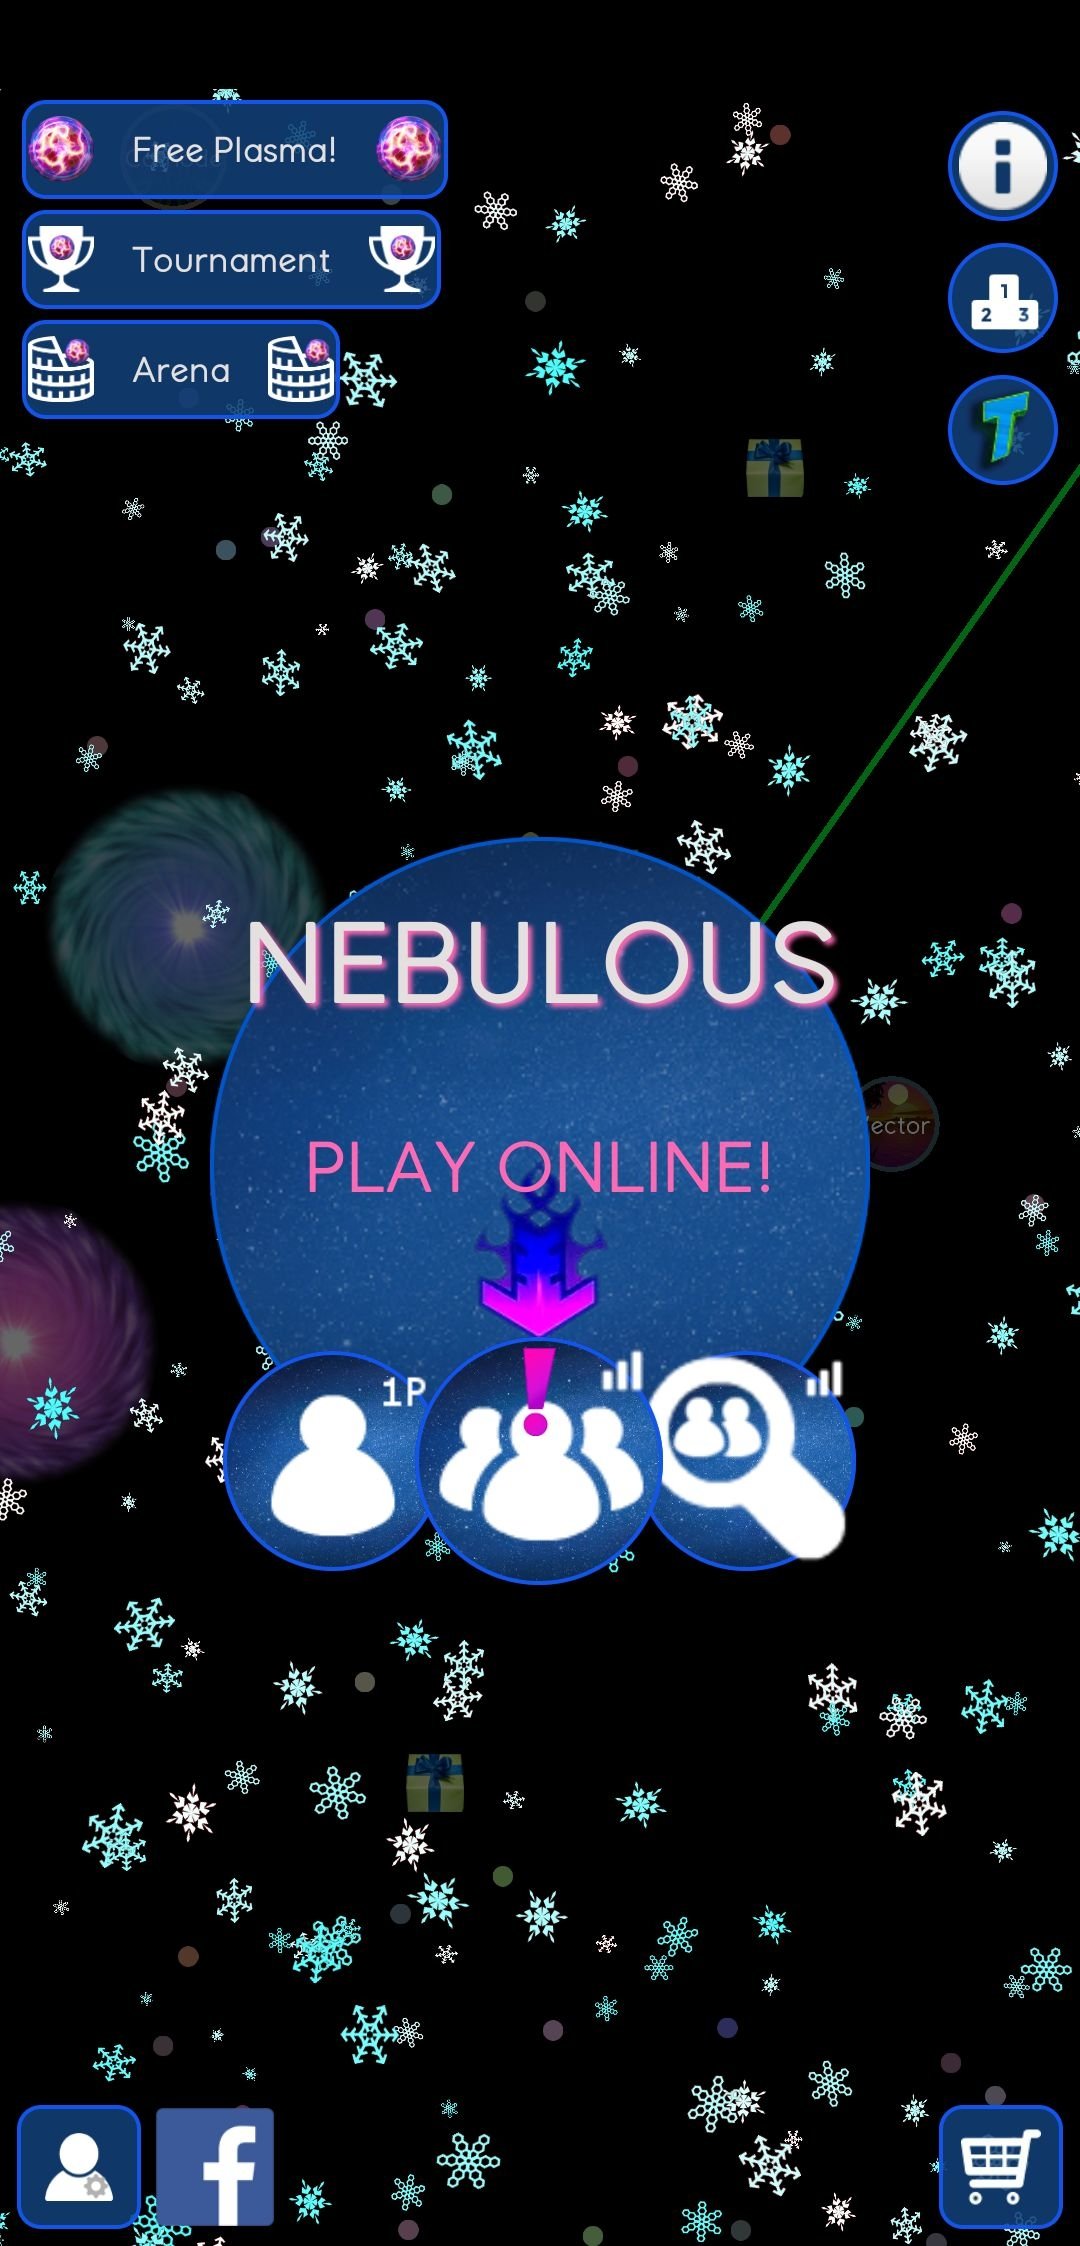 Nebulous Io 3 1 3 Telecharger Pour Android Apk Gratuitement - telecharger skins de roblox skins gratuits pour roblox 2 3 apk